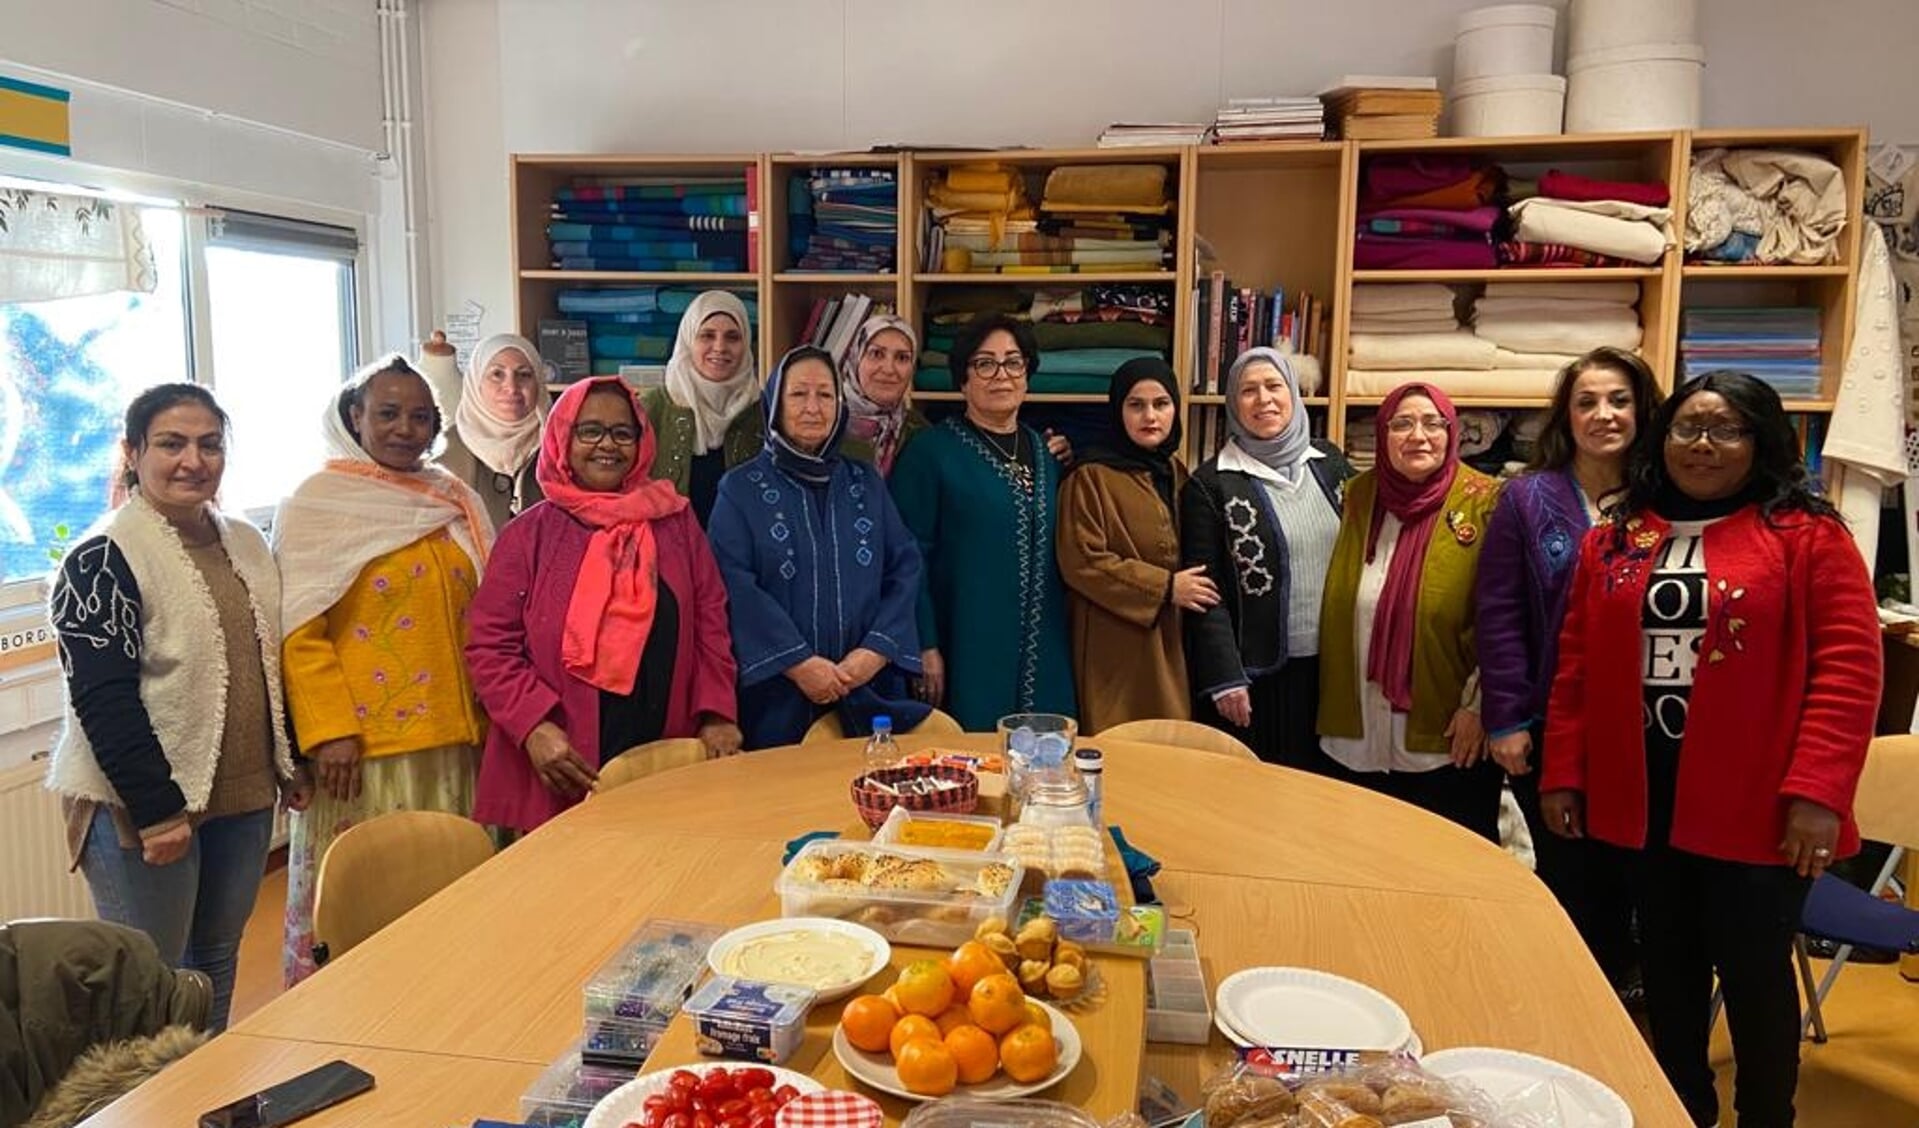 De groep vluchtelingvrouwen en vrijwilligers van About a Jacket vertrok woensdagmorgen voor de opening van de tentoonstelling naar het TextielMuseum in Tilburg.